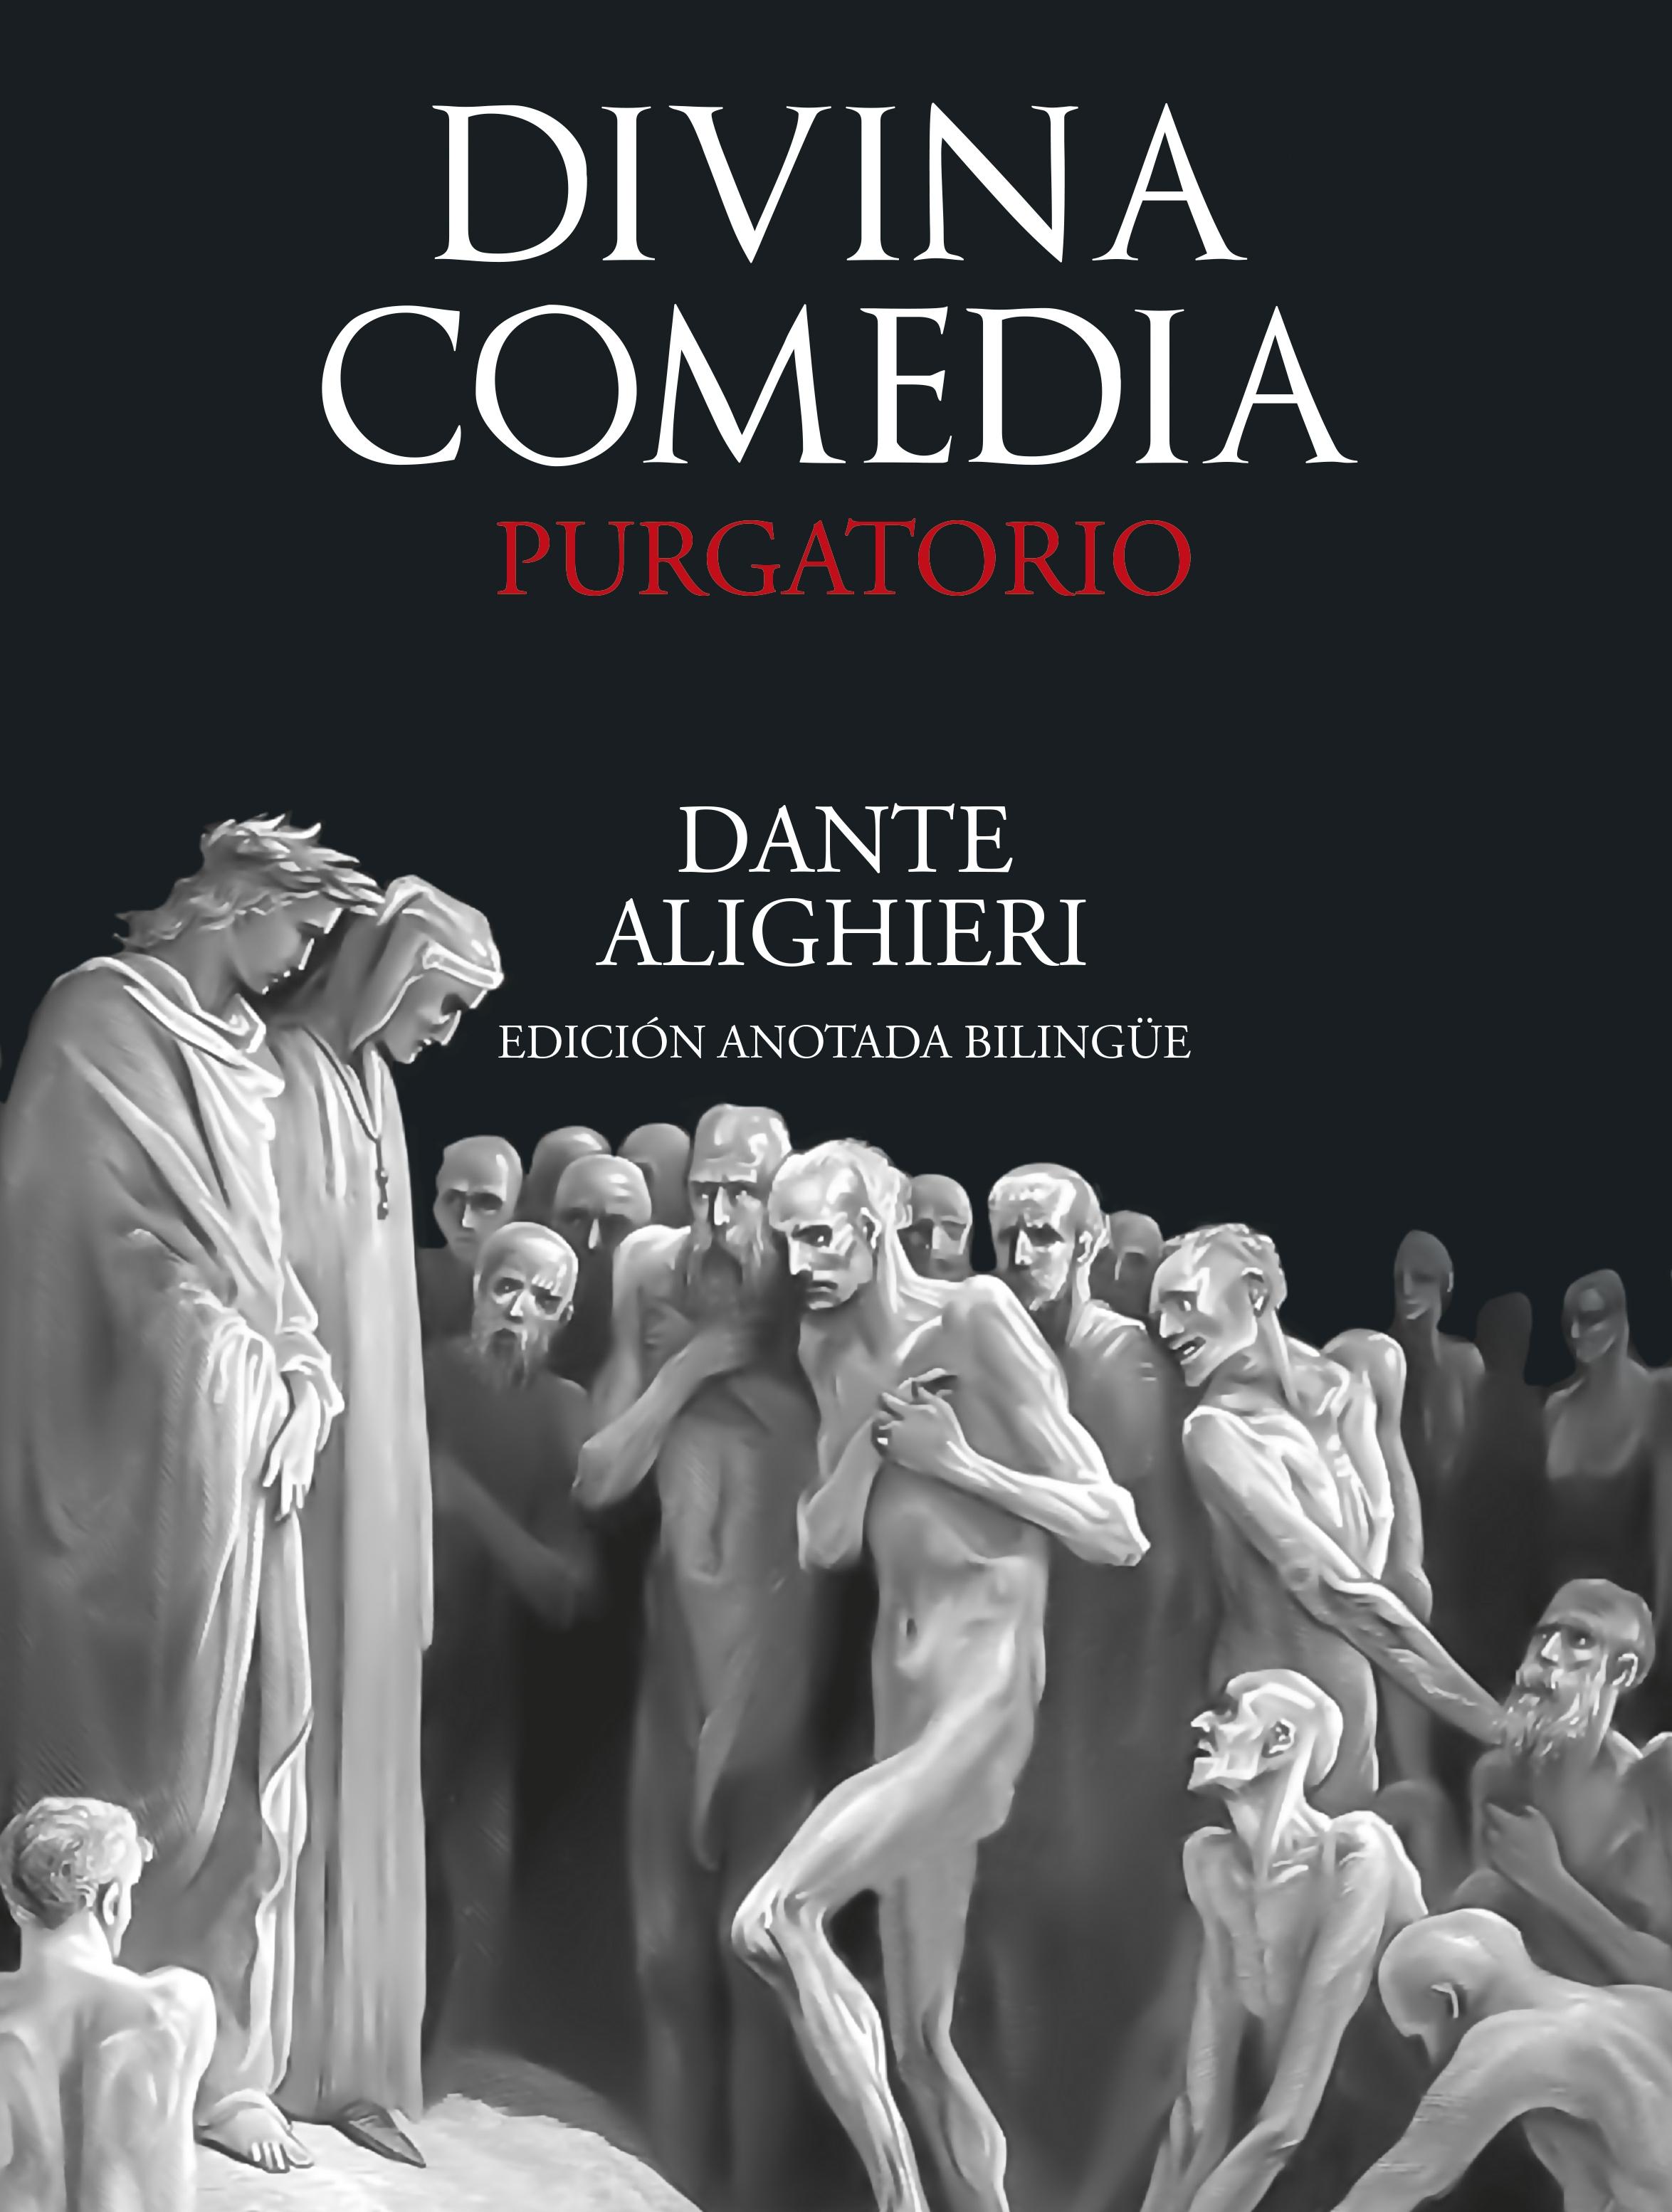 Divina Comedia: Purgatorio "(Edición anotada bilingüe)"